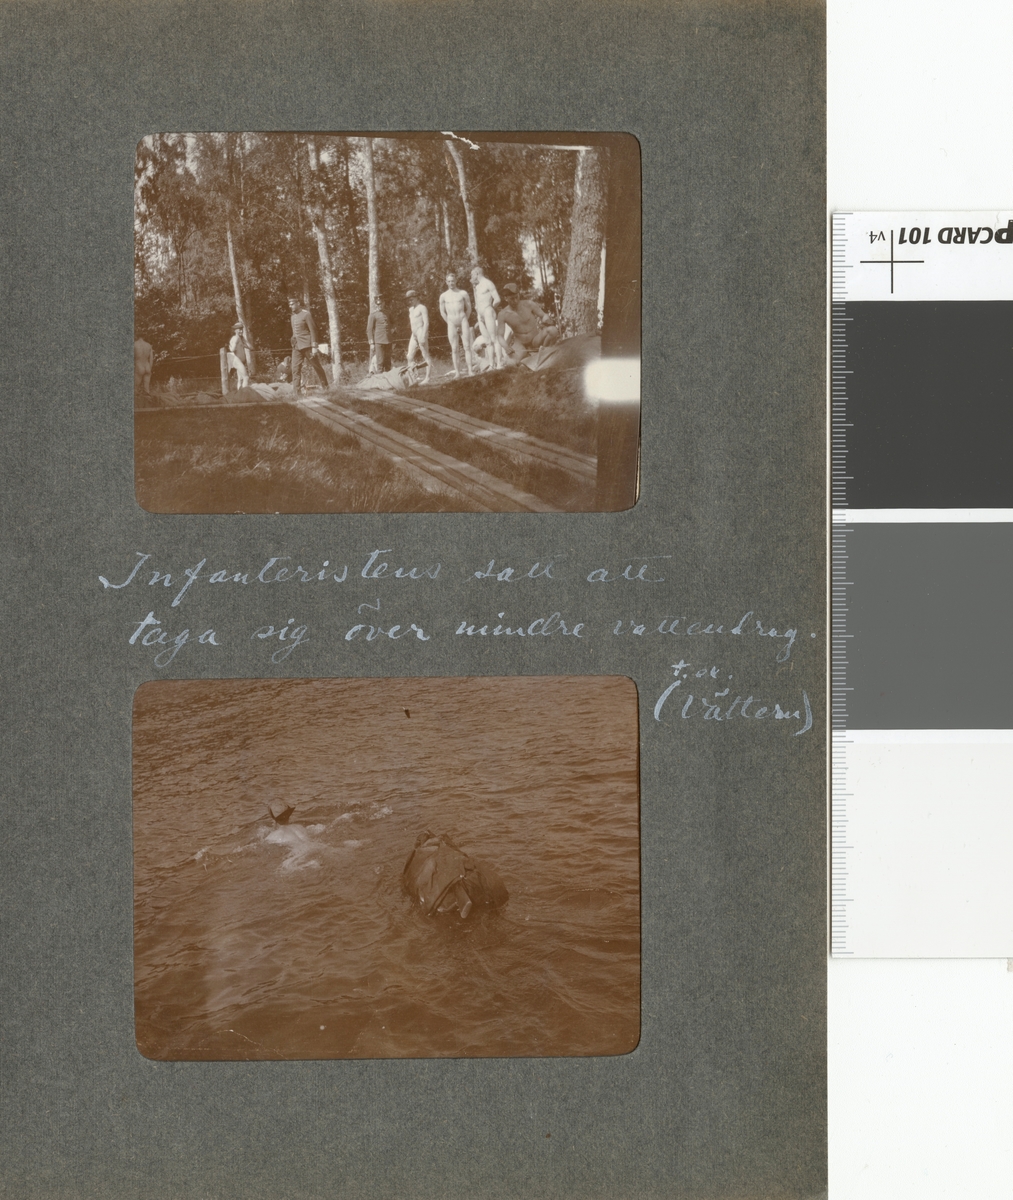 Text i fotoalbum: "Infanteristen satt att taga sig över mindre vattendrag, (t ex. Vättern)."